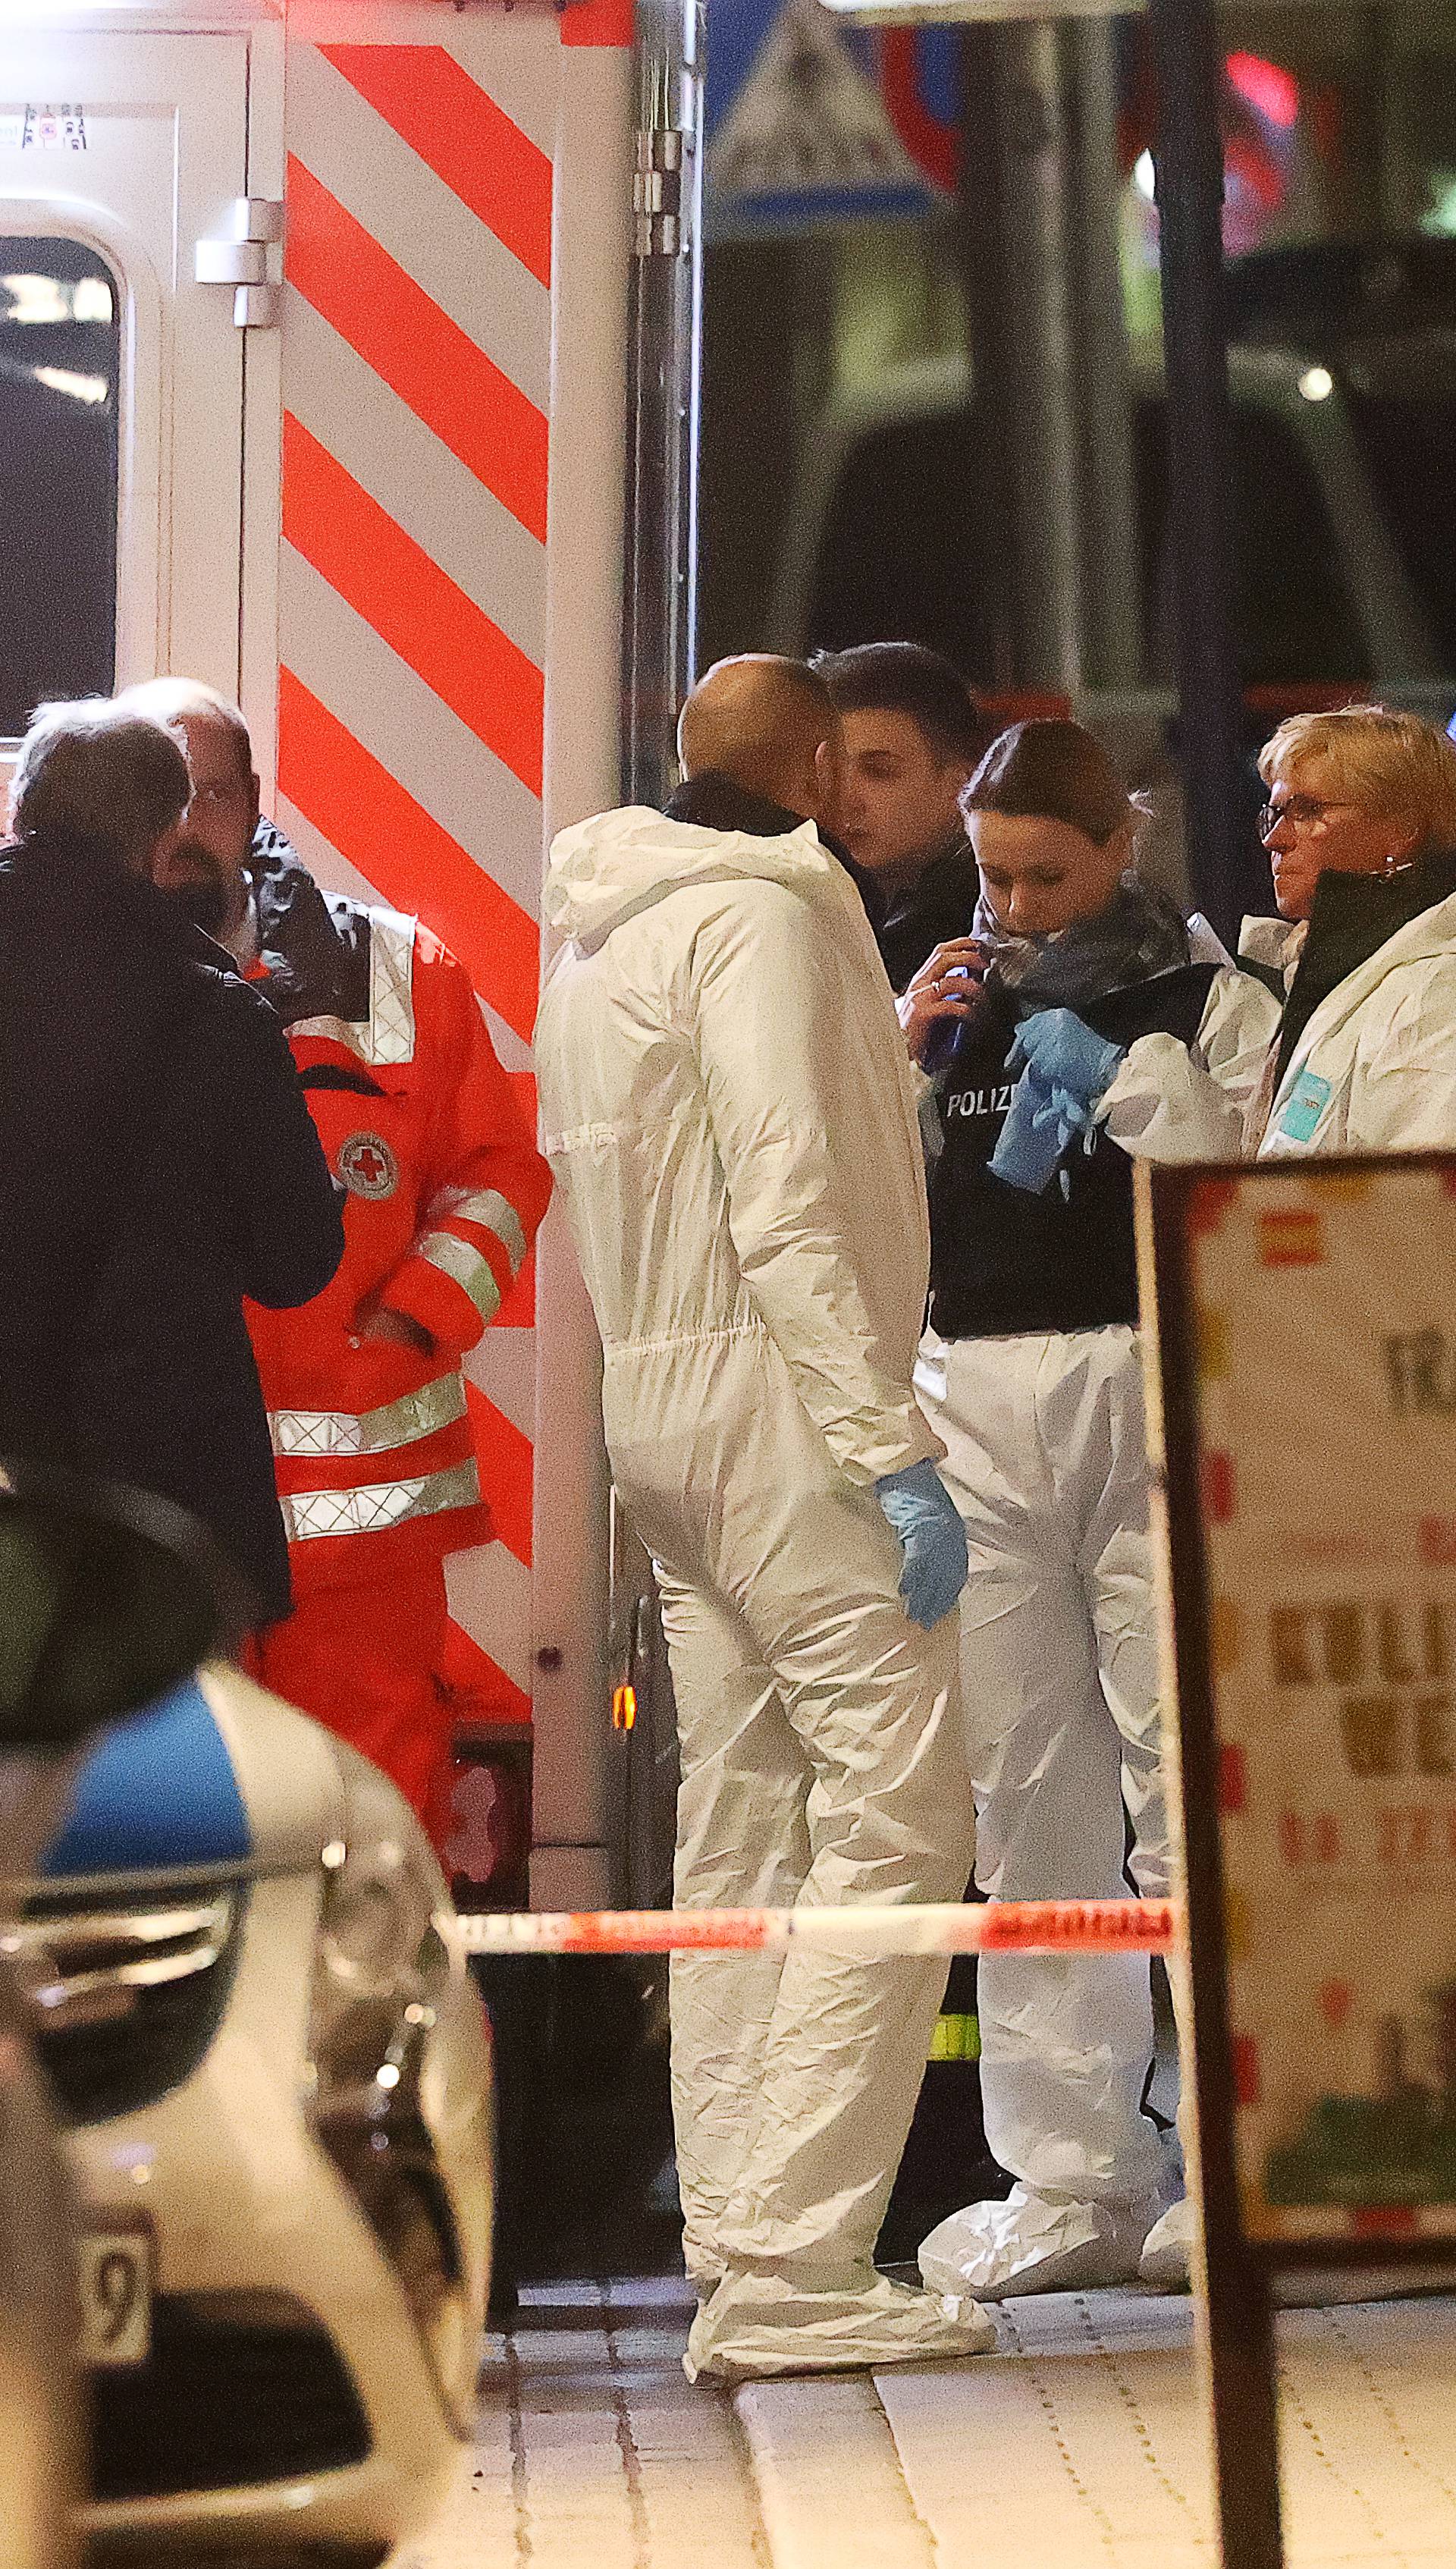 Masakr u Njemačkoj: U dva su kafića pobili osmero ljudi